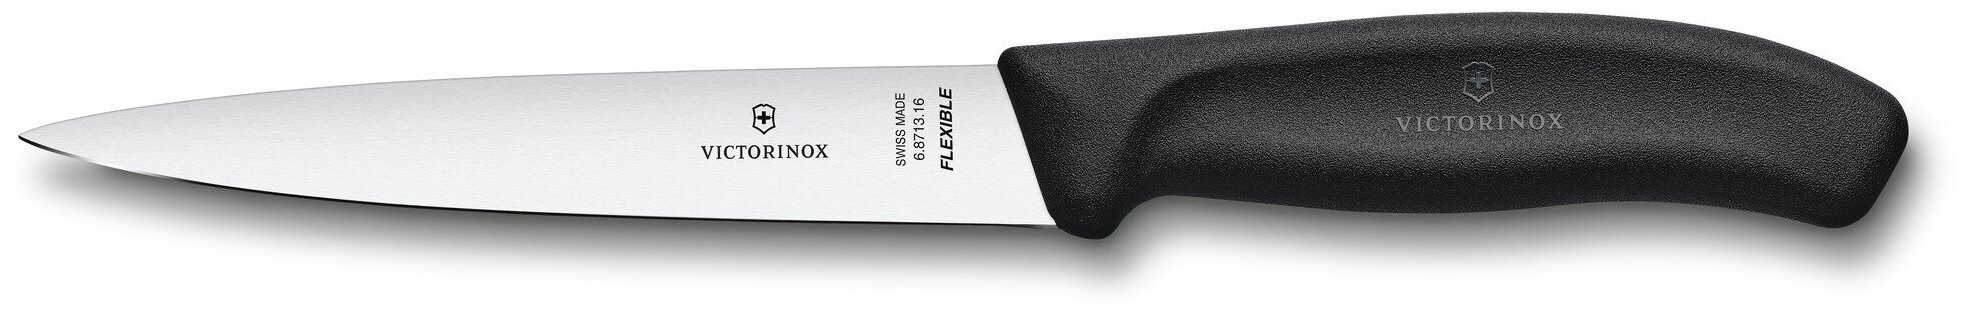 Нож филейный VICTORINOX SwissClassic с гибким прямым лезвием 16 см, чёрный, 6.8713.16B